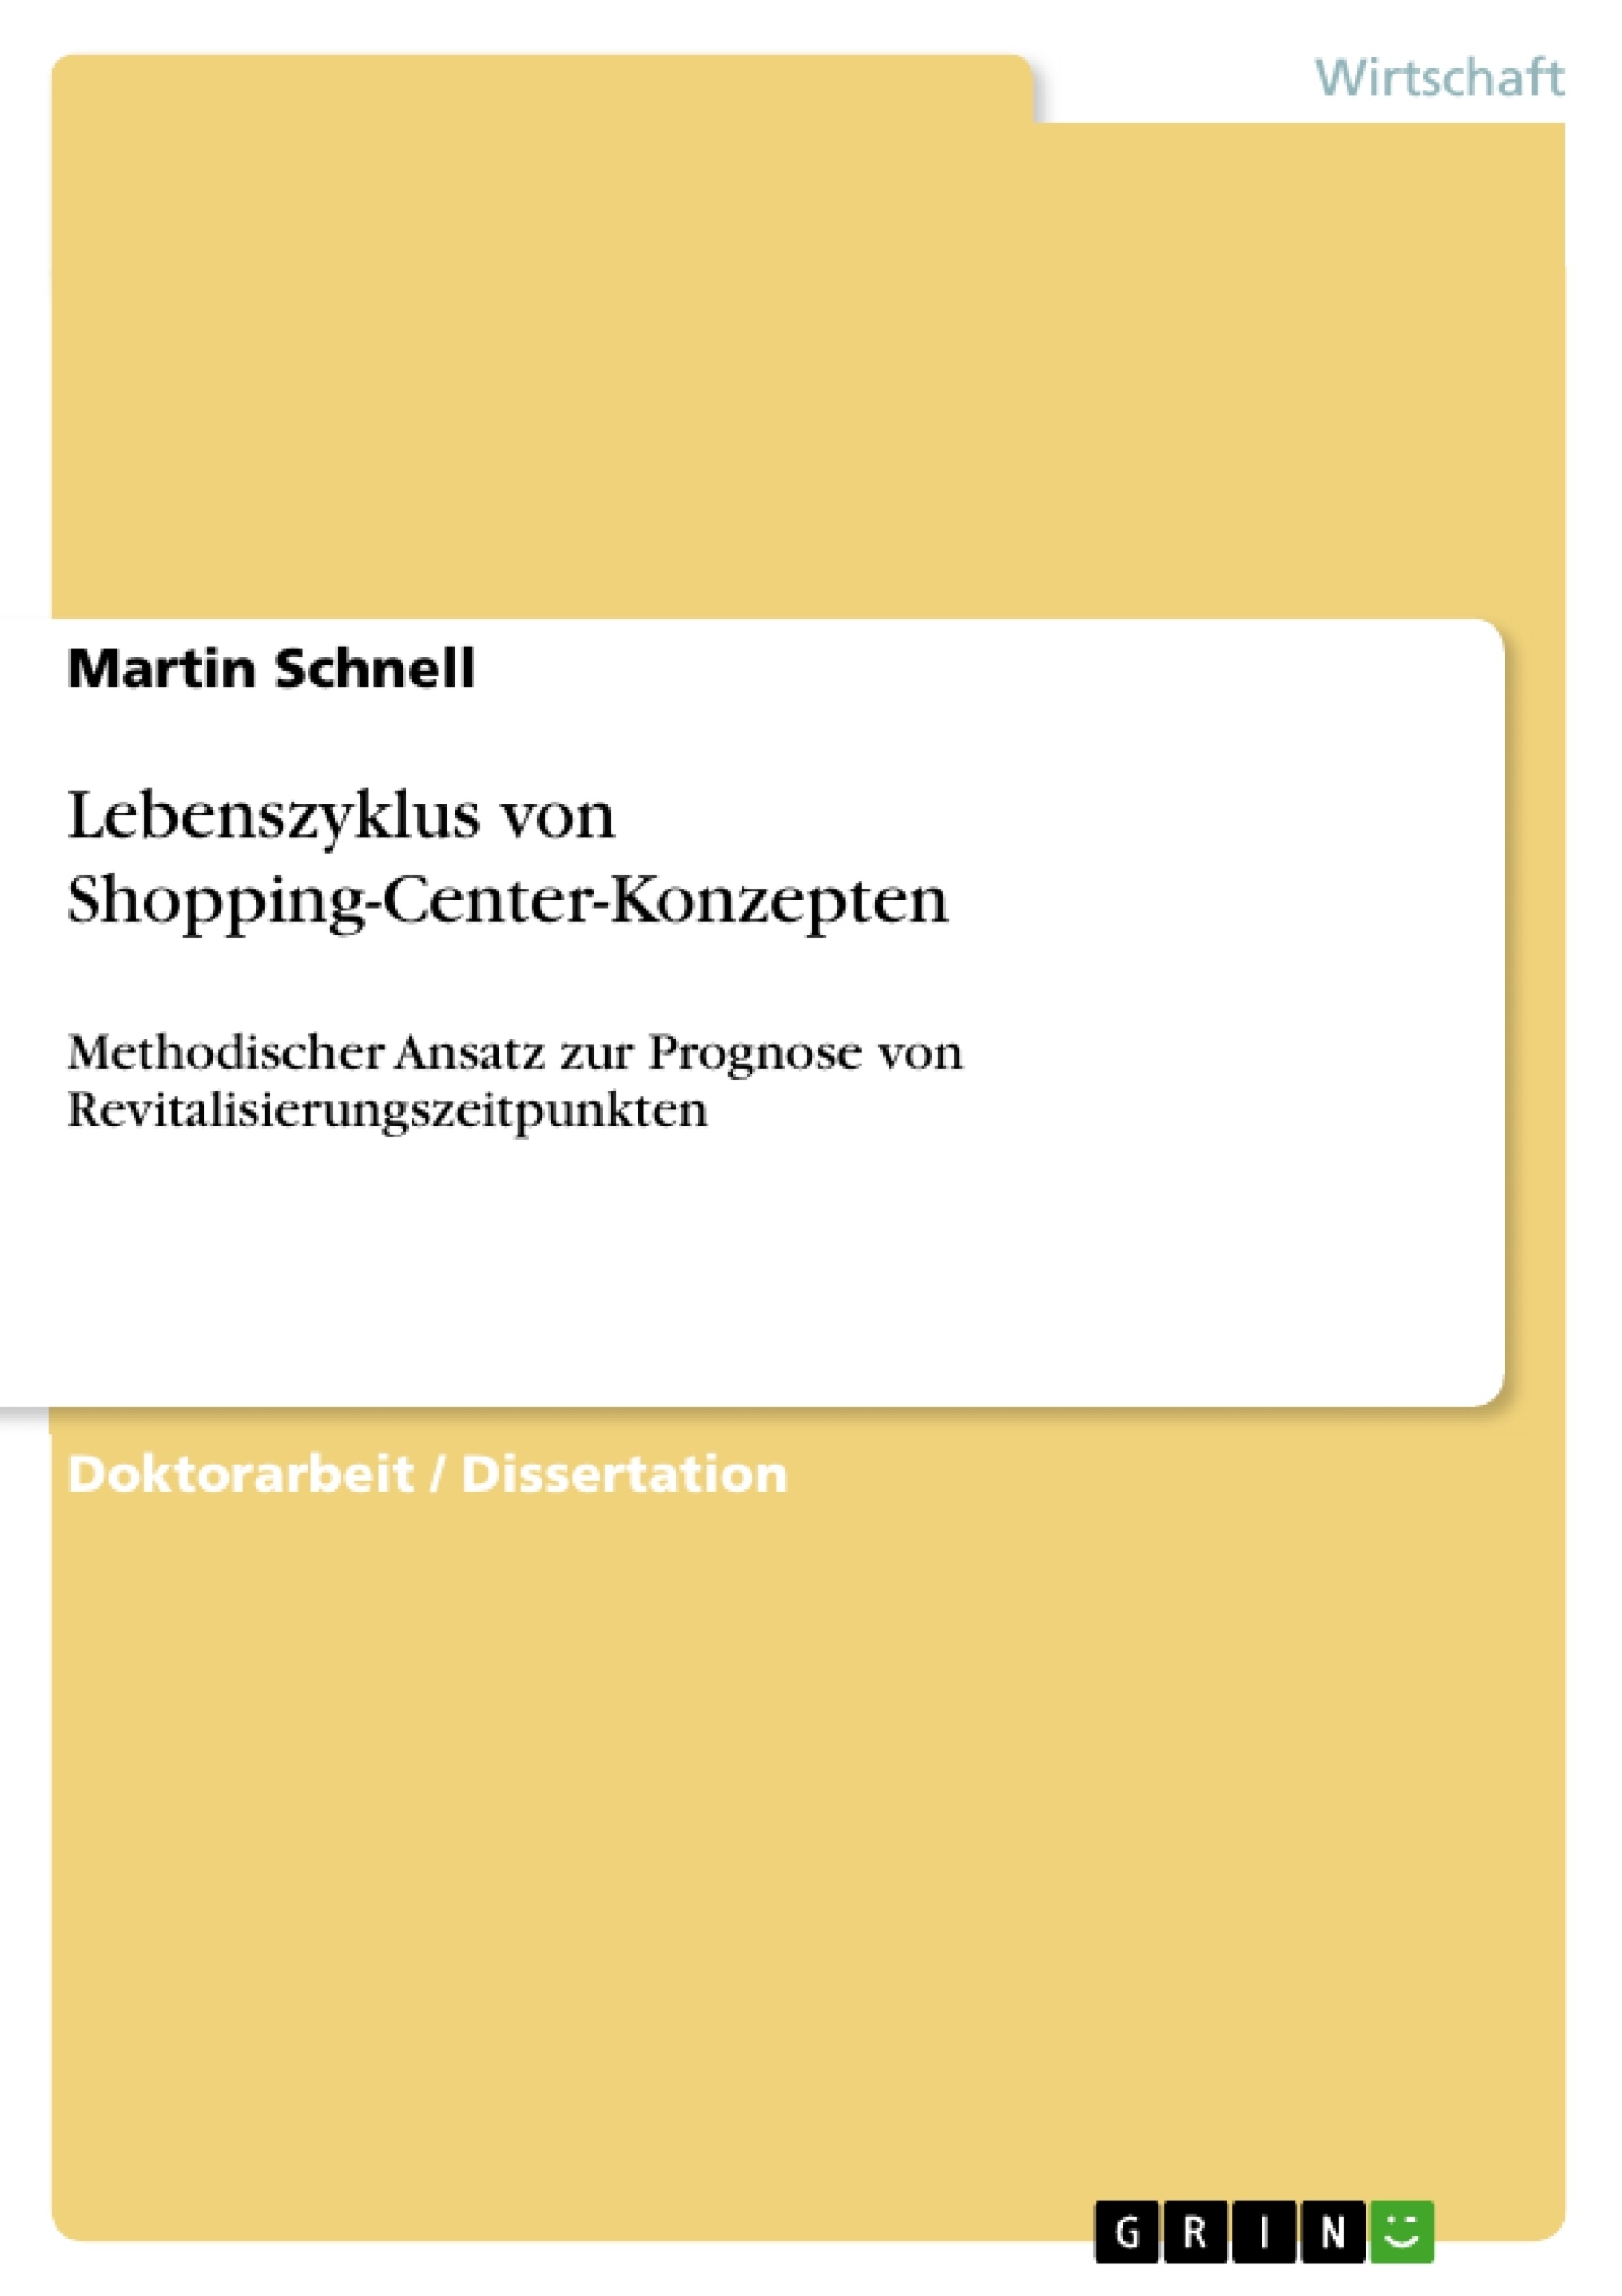 Titel: Lebenszyklus von Shopping-Center-Konzepten